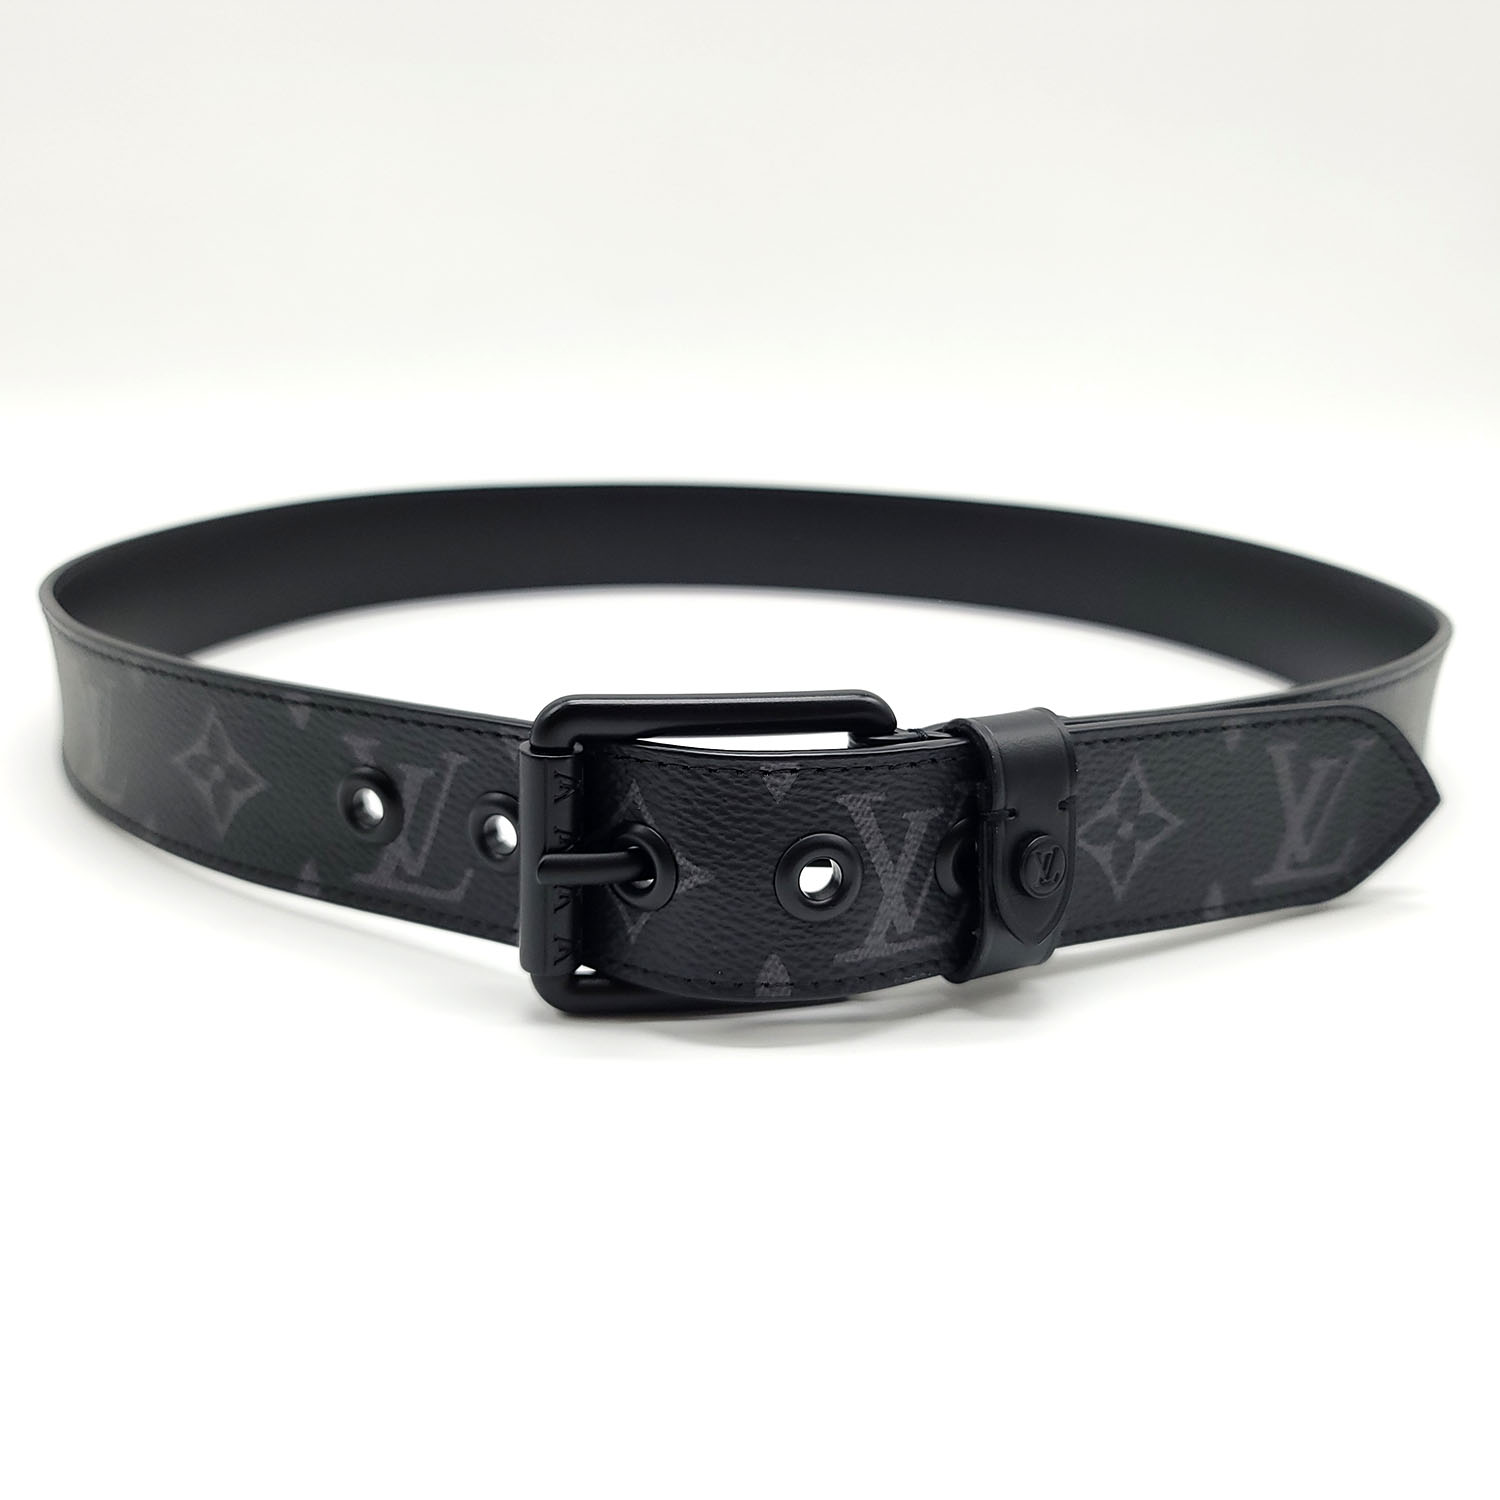 Louis Vuitton Men's Black Leather Voyager 35 MM Belt size 34 / 85 cm